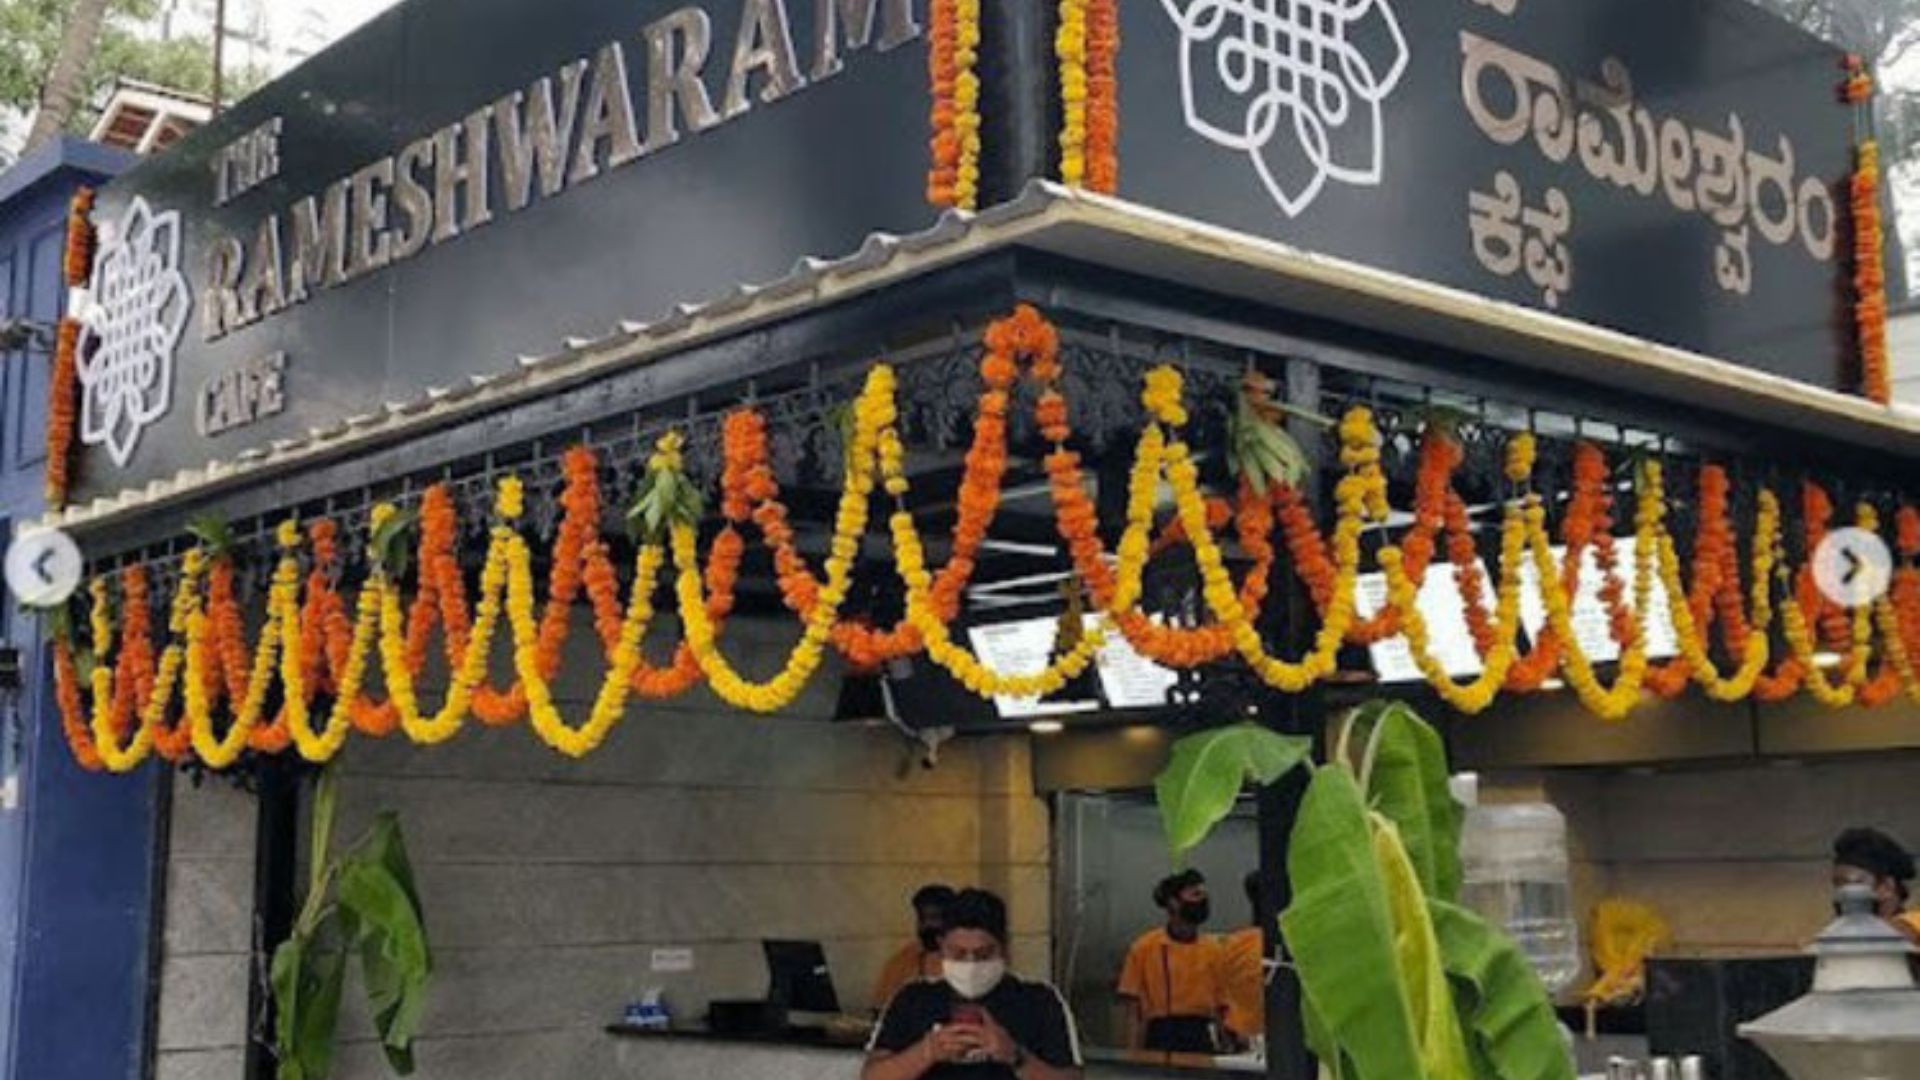 Rameswaram Cafe